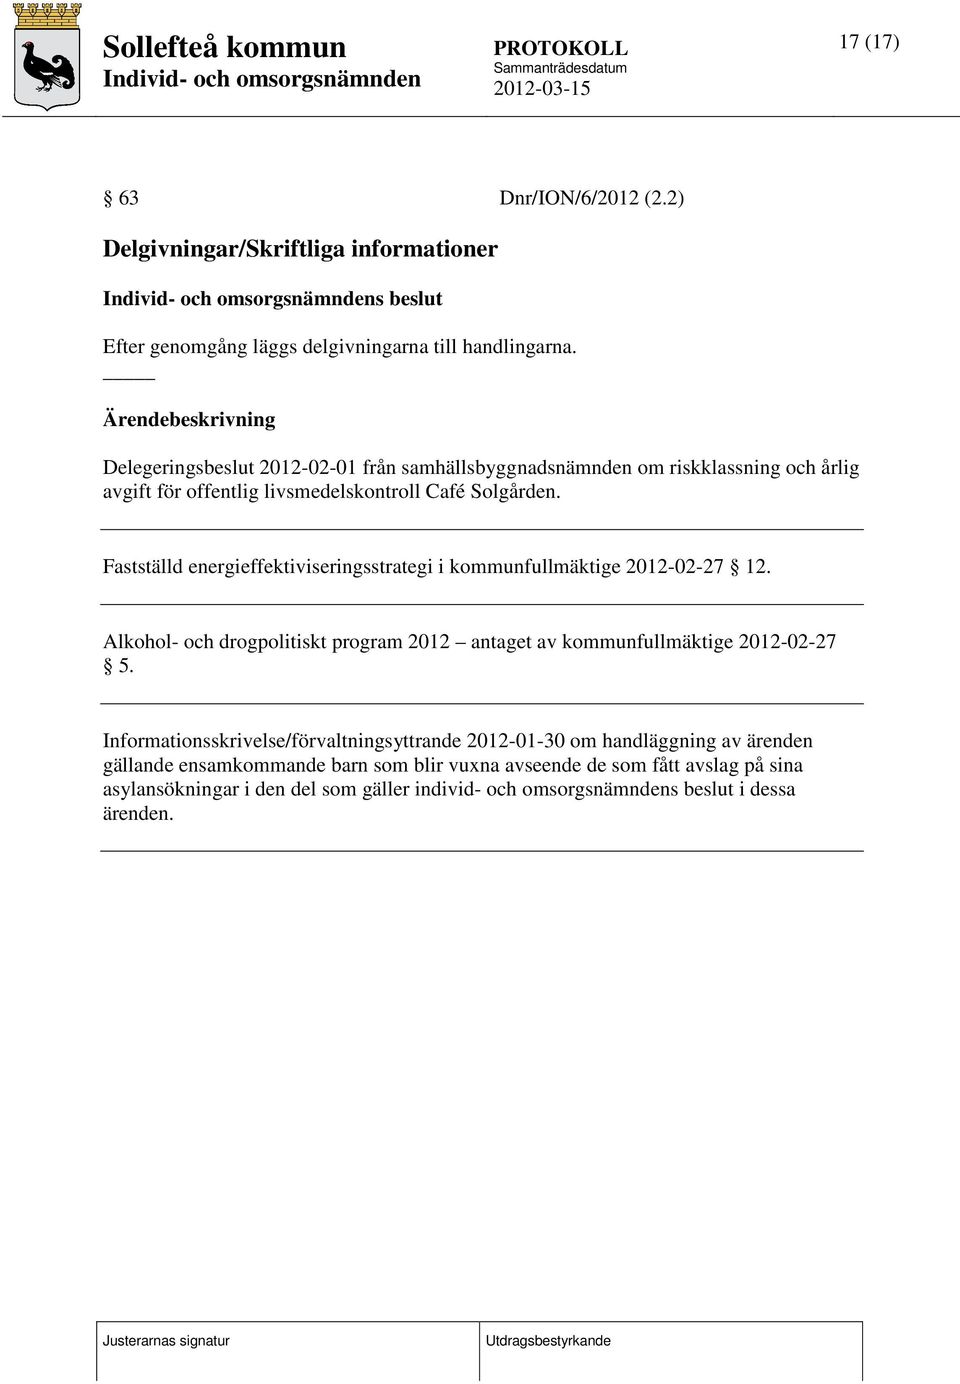 Fastställd energieffektiviseringsstrategi i kommunfullmäktige 2012-02-27 12. Alkohol- och drogpolitiskt program 2012 antaget av kommunfullmäktige 2012-02-27 5.